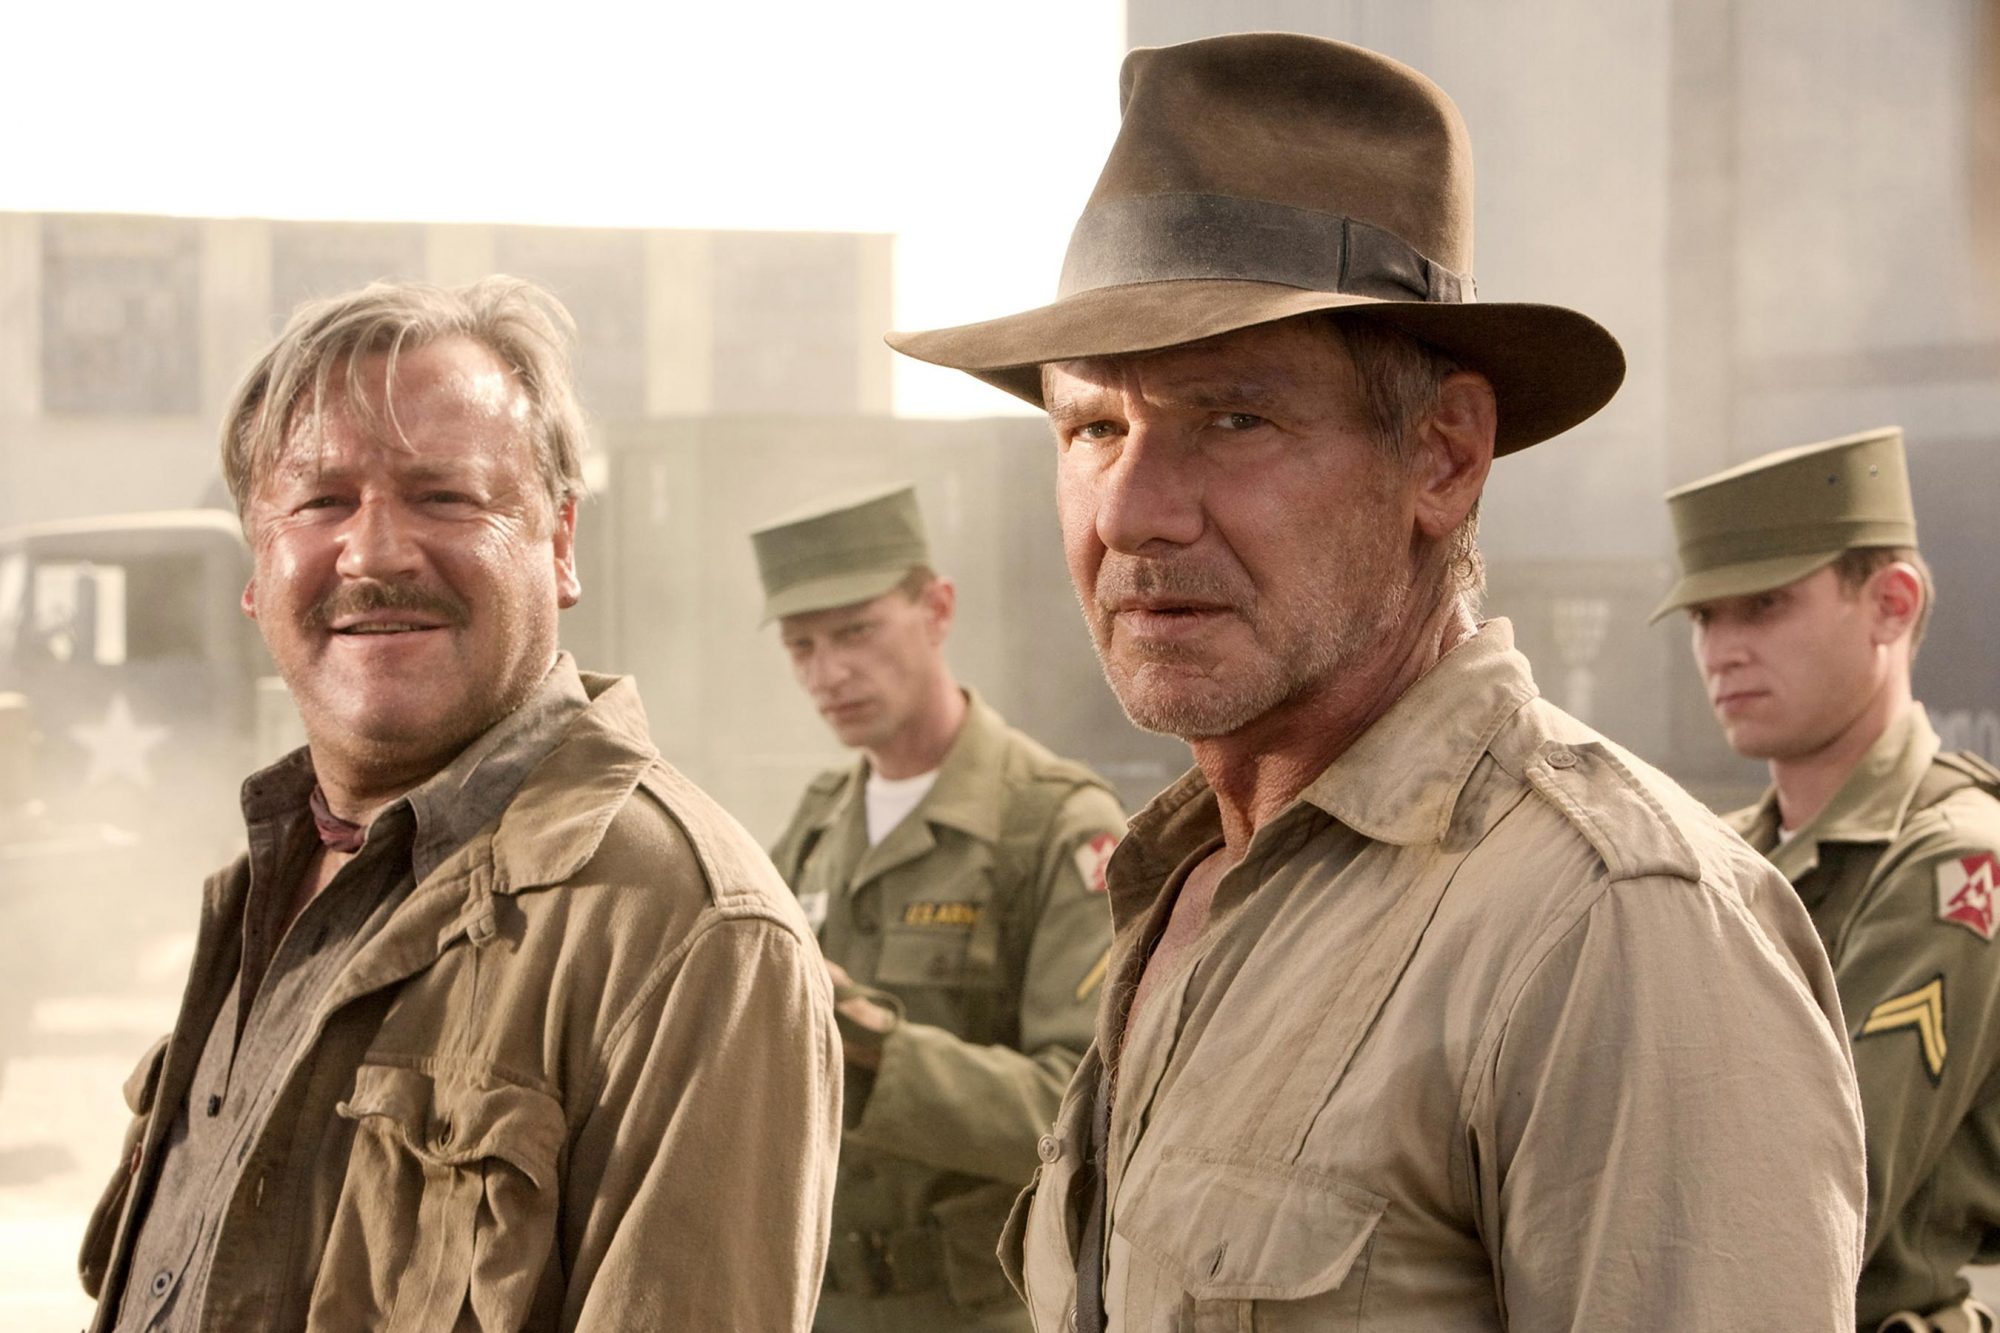 CRÍTICA: Indiana Jones y el Reino de la Calavera de Cristal – no es terrible, pero sí la más flojita de todas